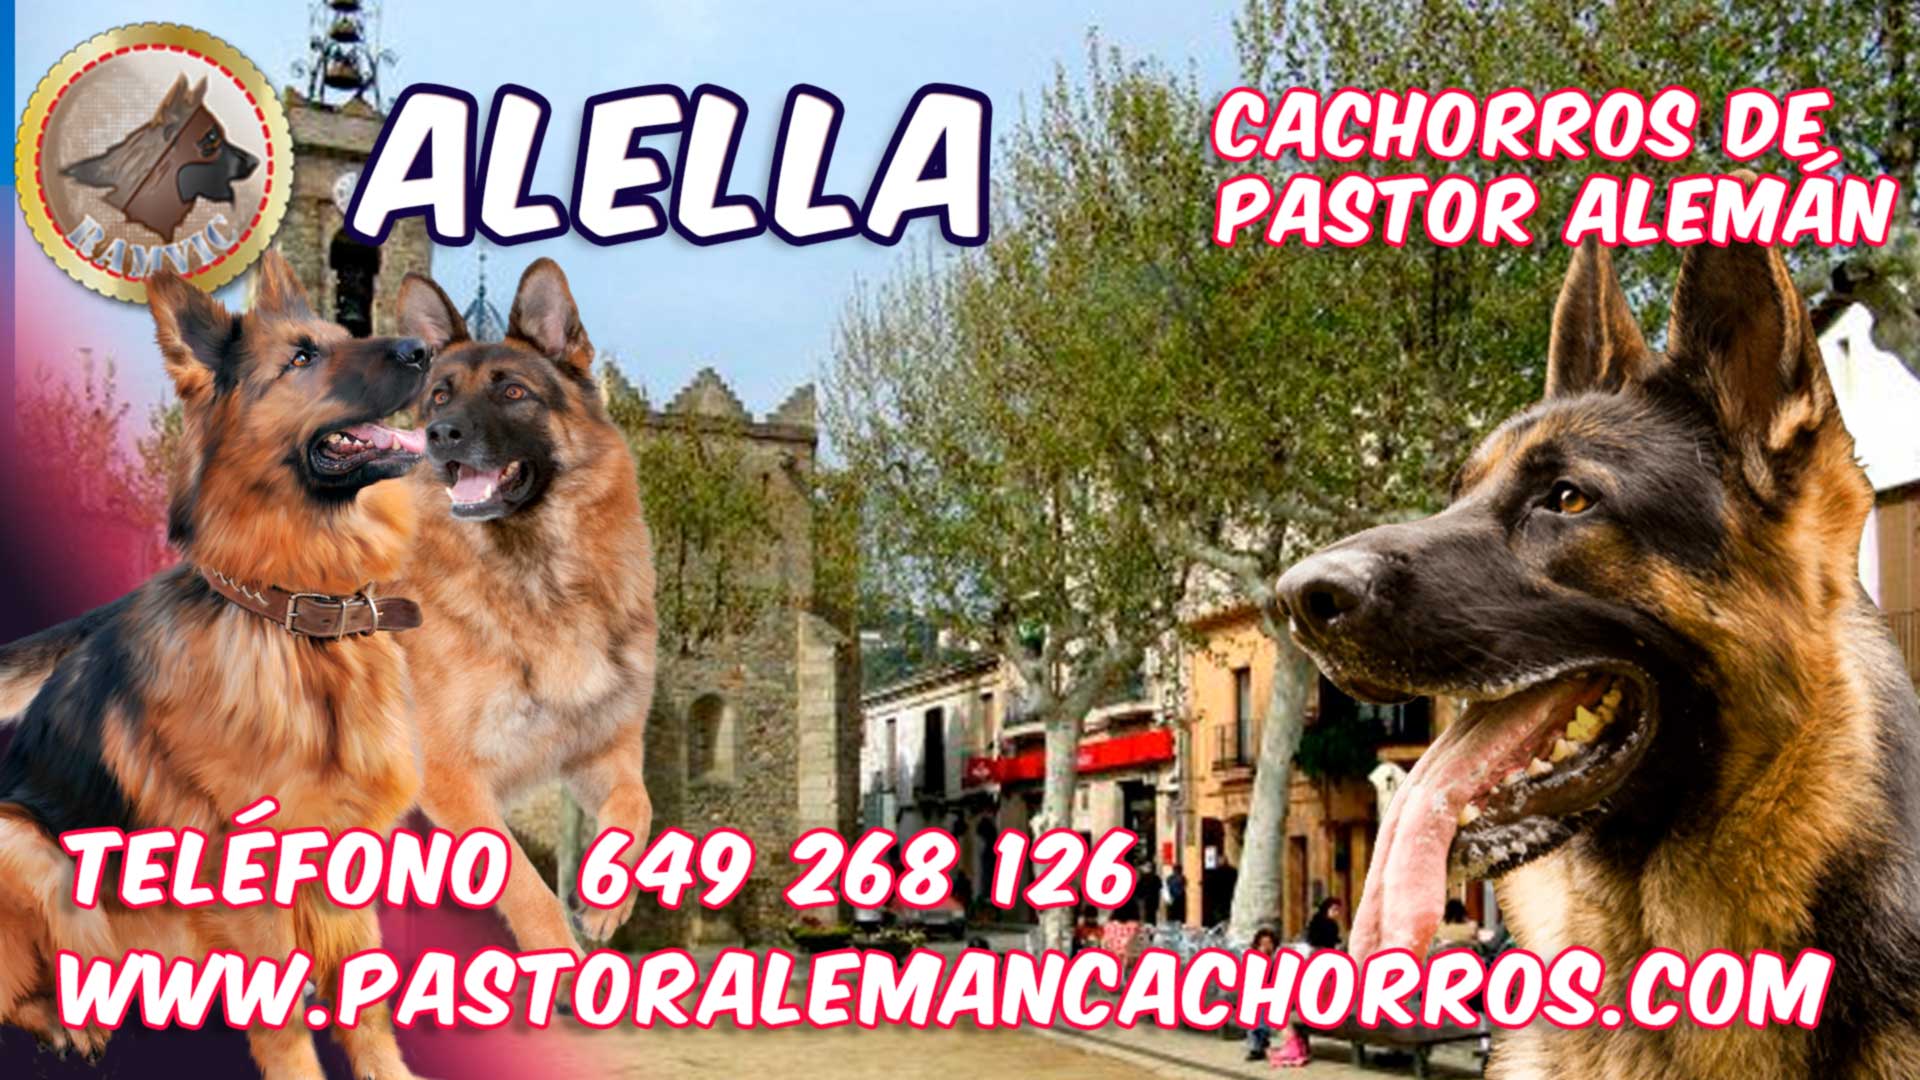 Cachorros de Pastor Alemán en Alella, Barcelona.